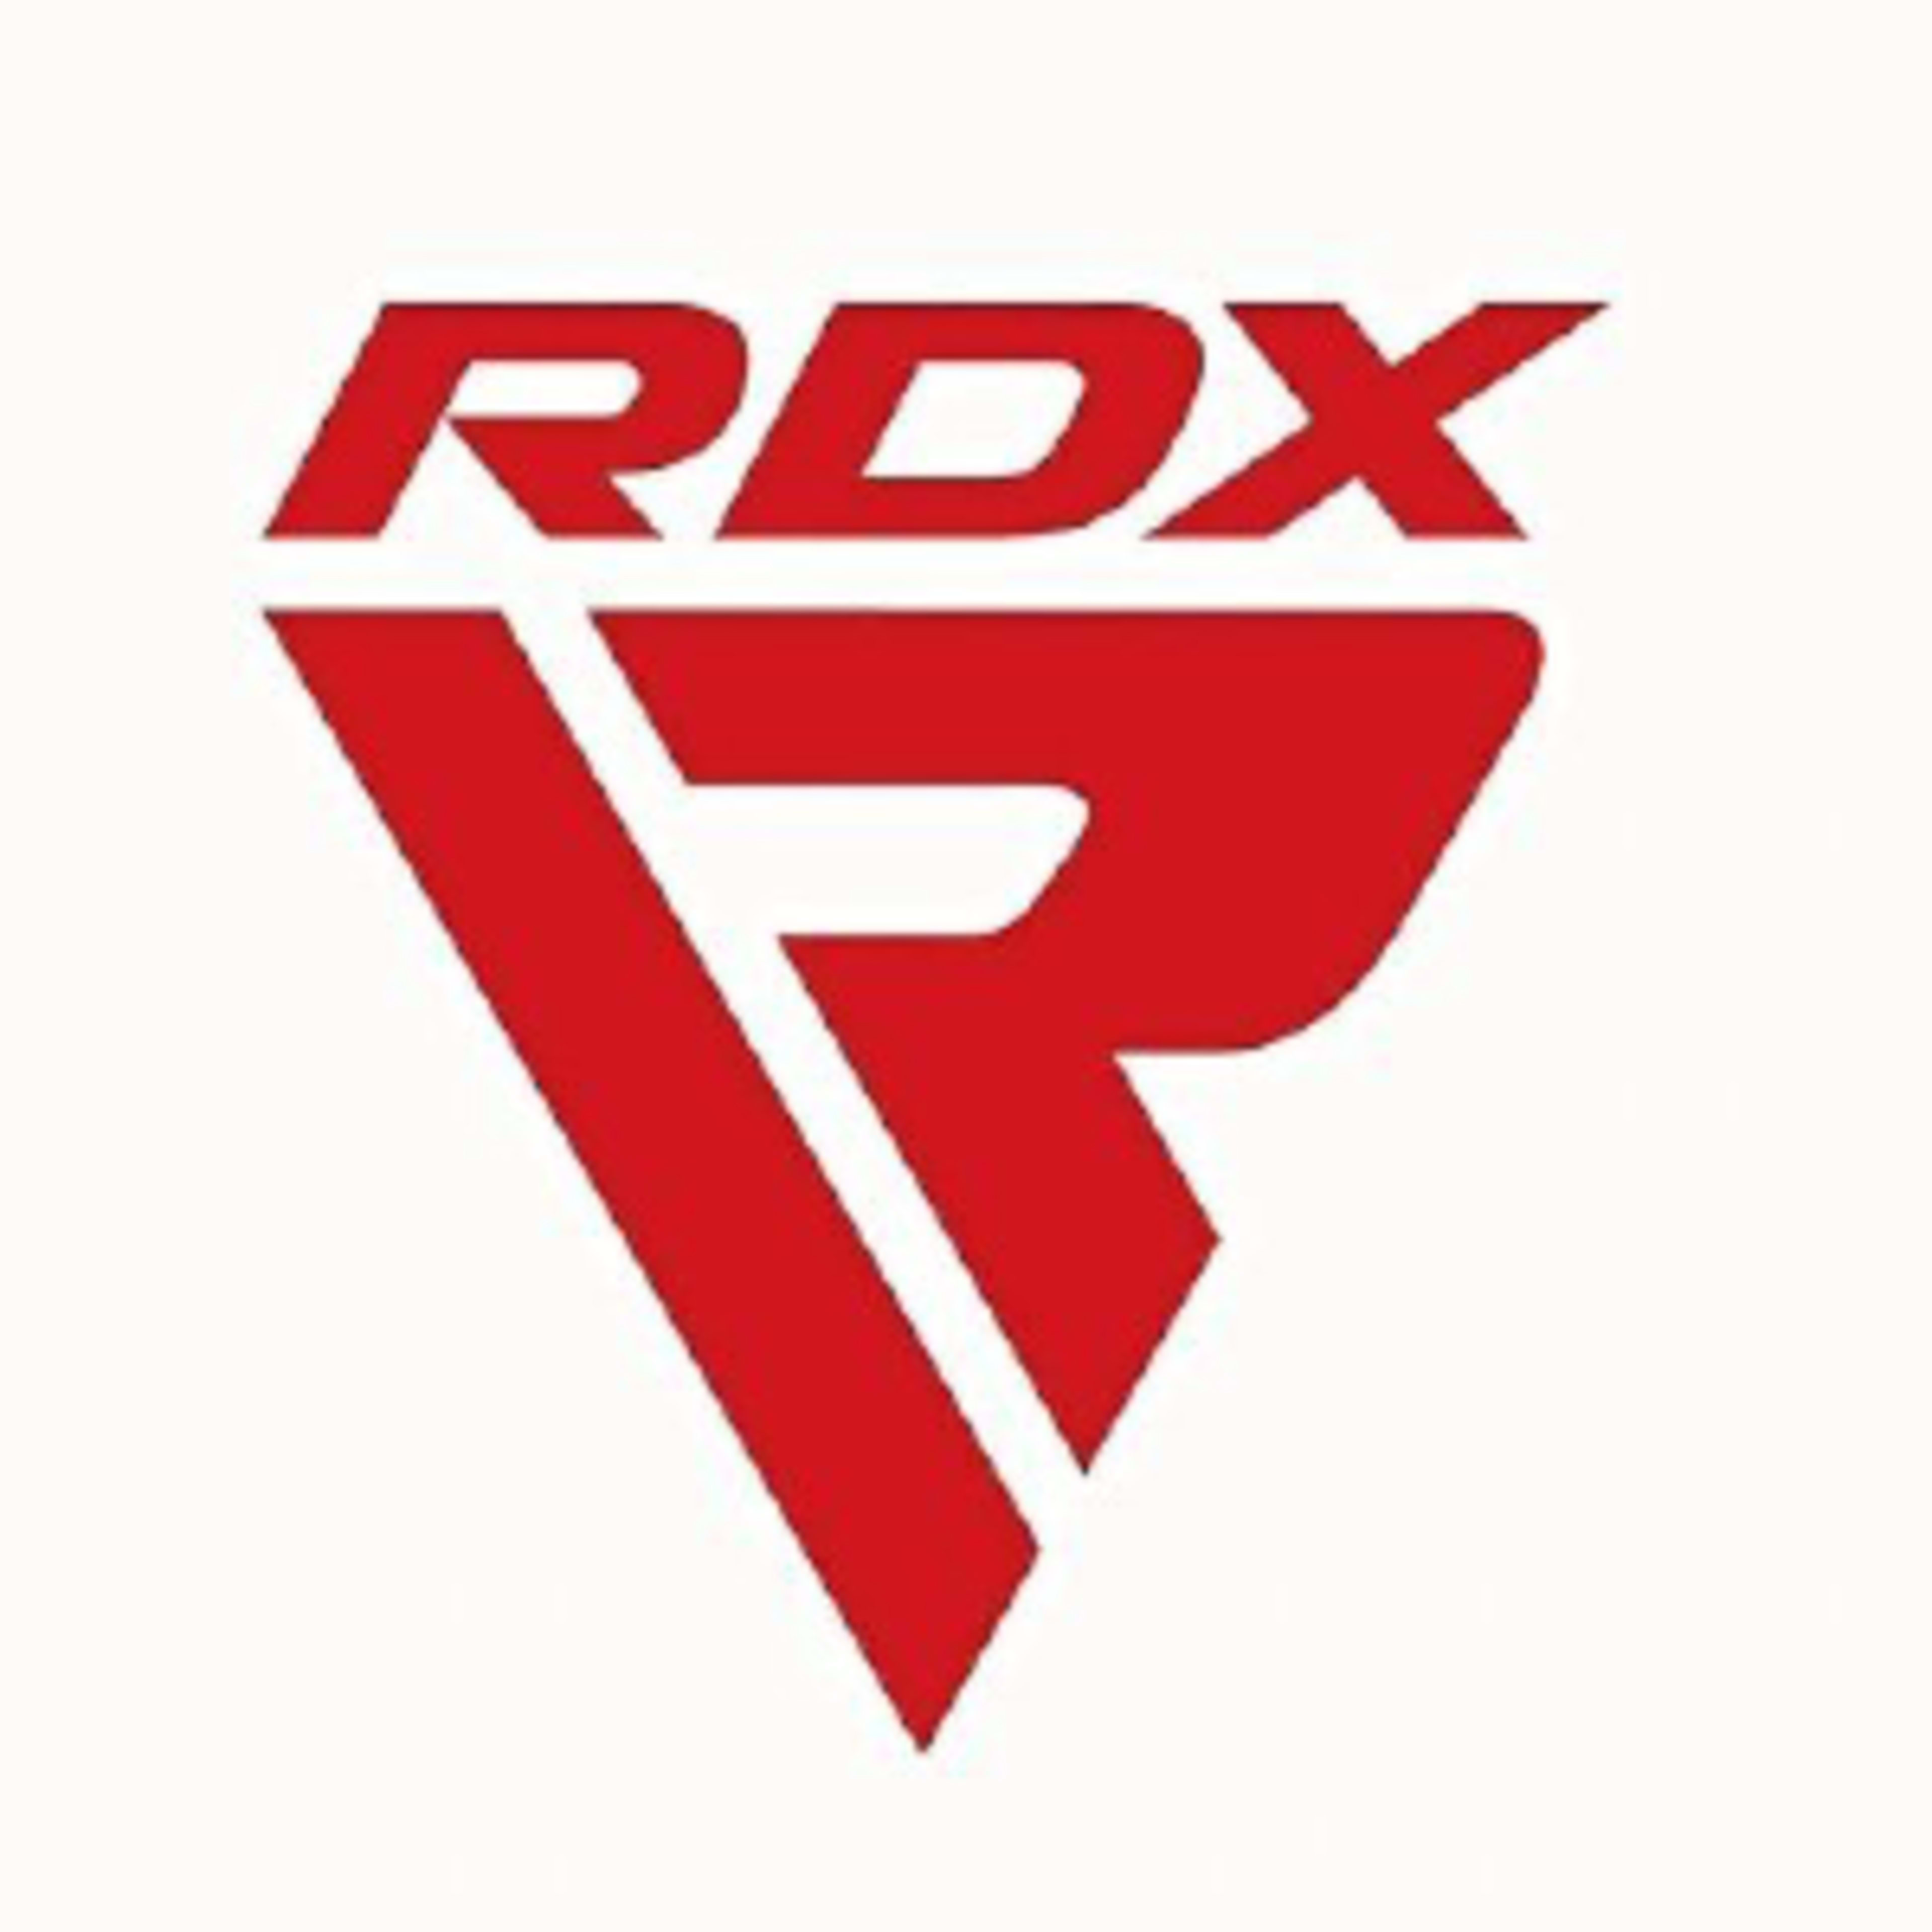 Rdx sportsCode